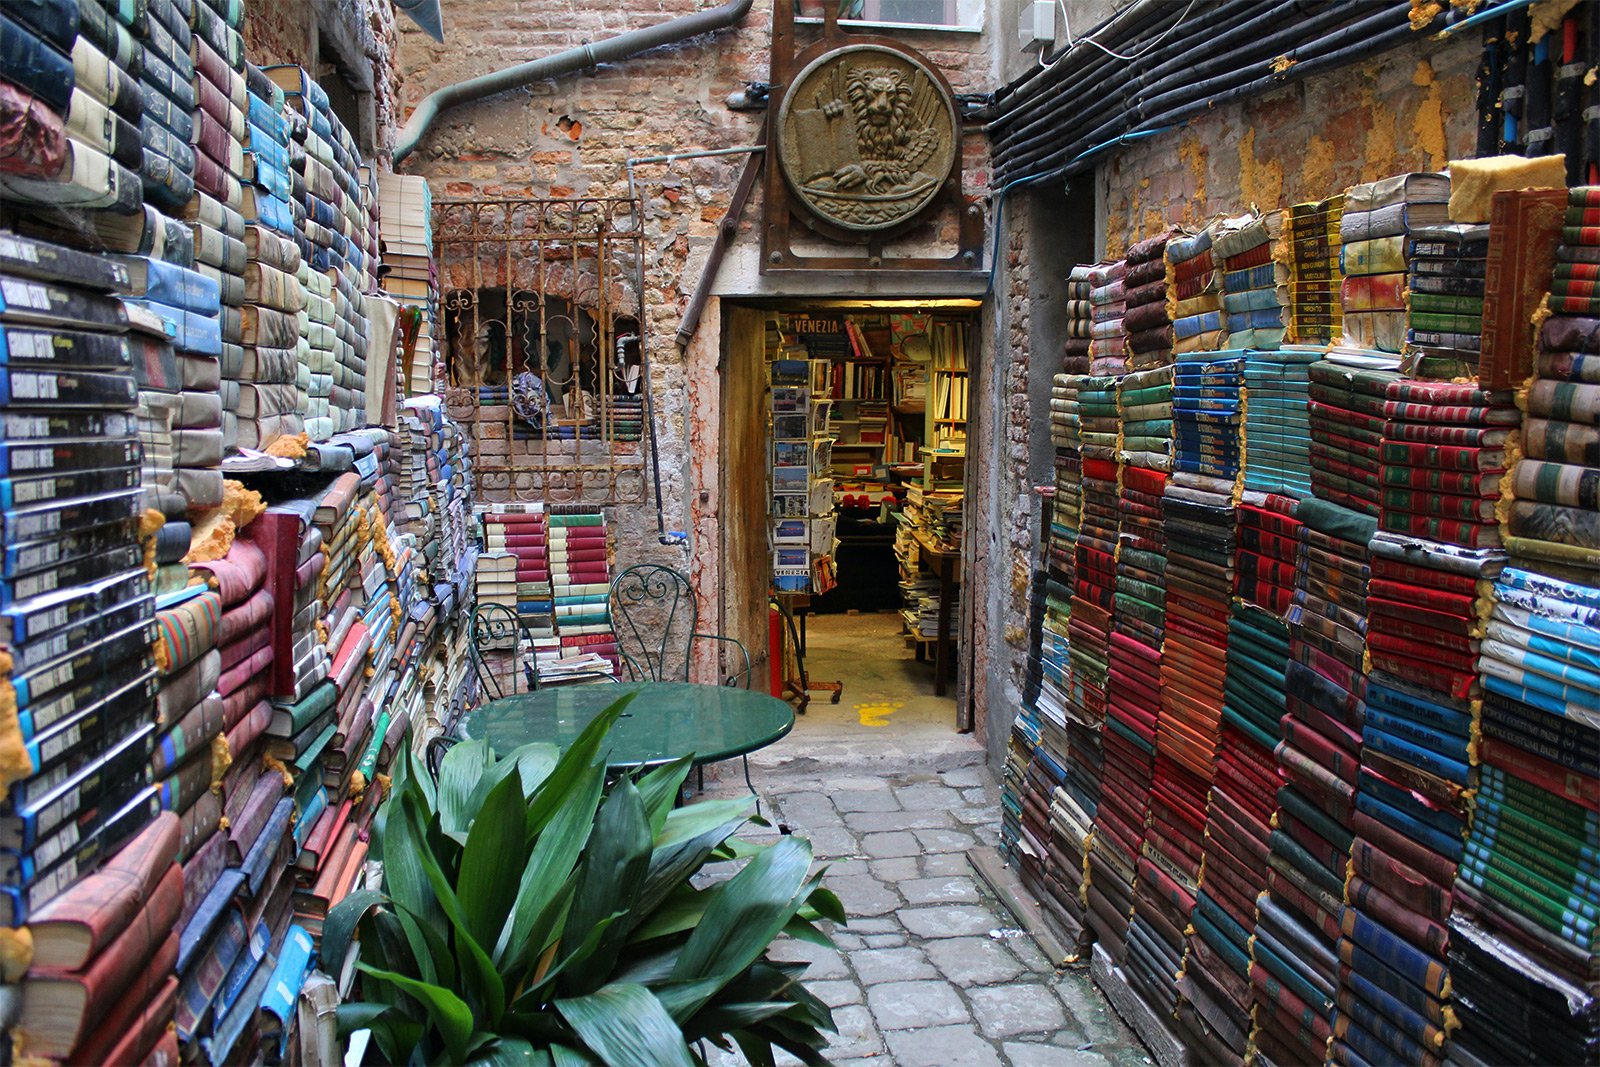 Libreria Acqua Alta, Venice